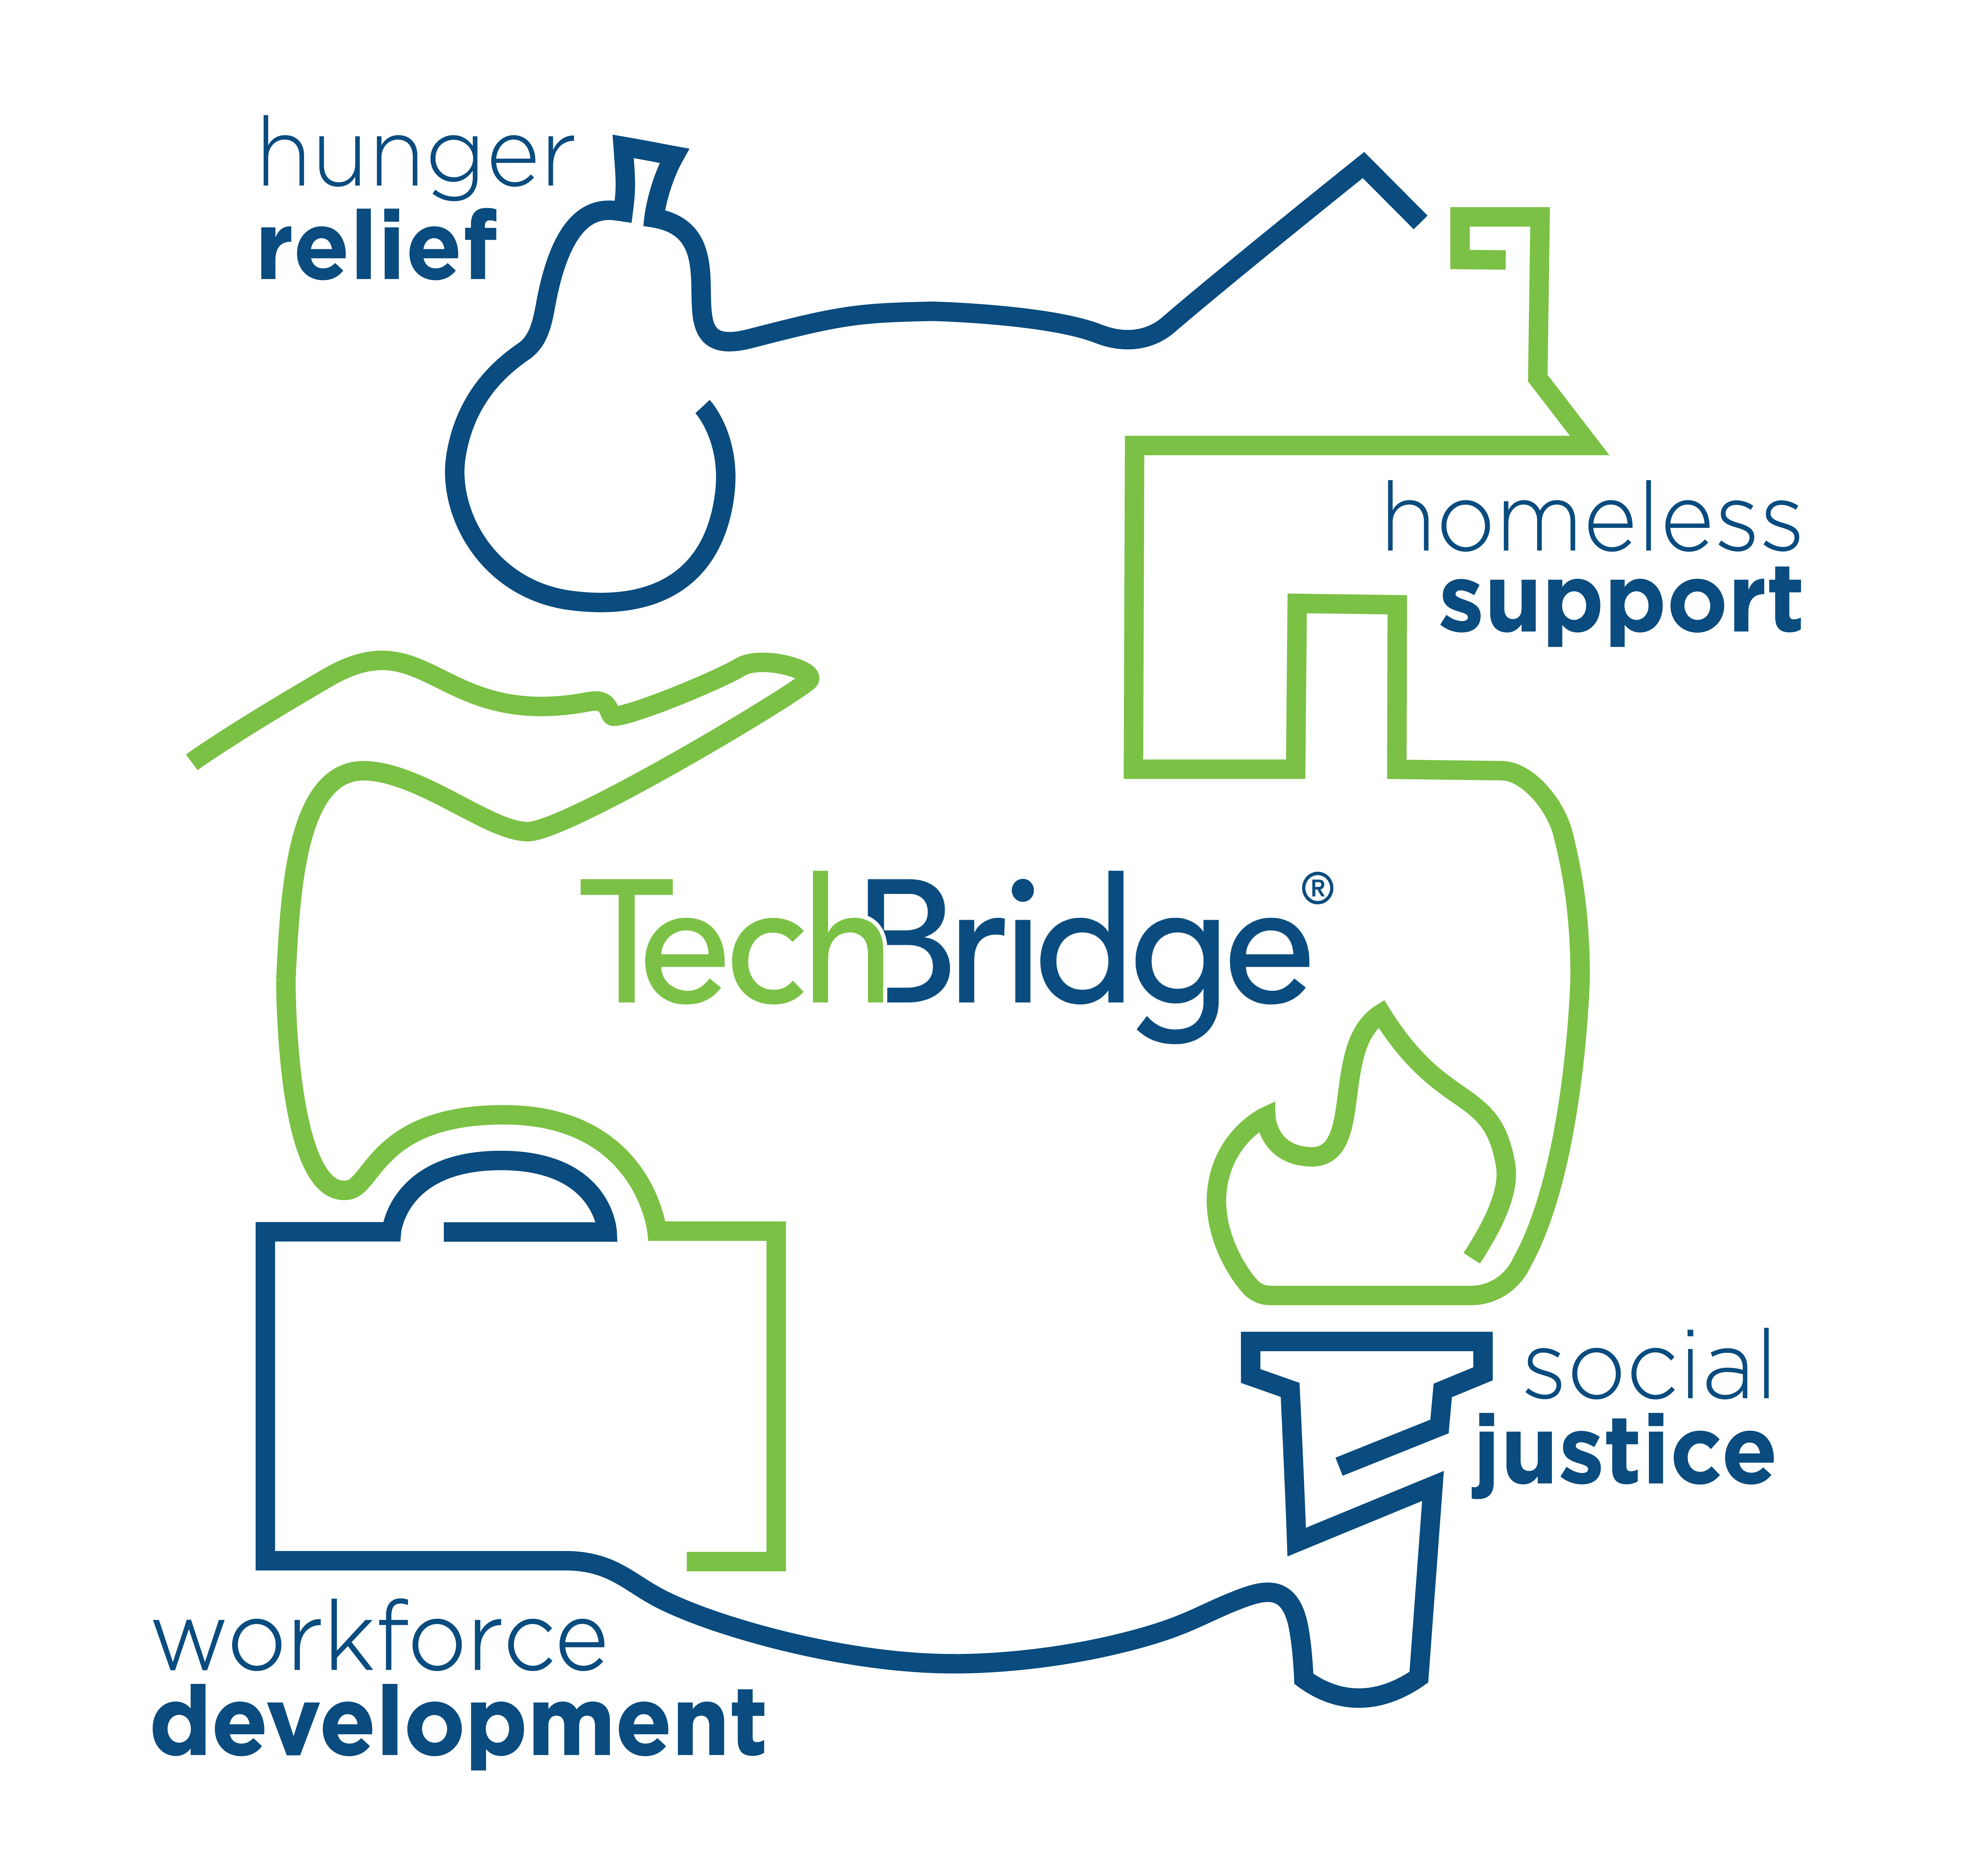 TechBridge’s 4 pillars: hunger relief, homeless support, social justice, workforce development